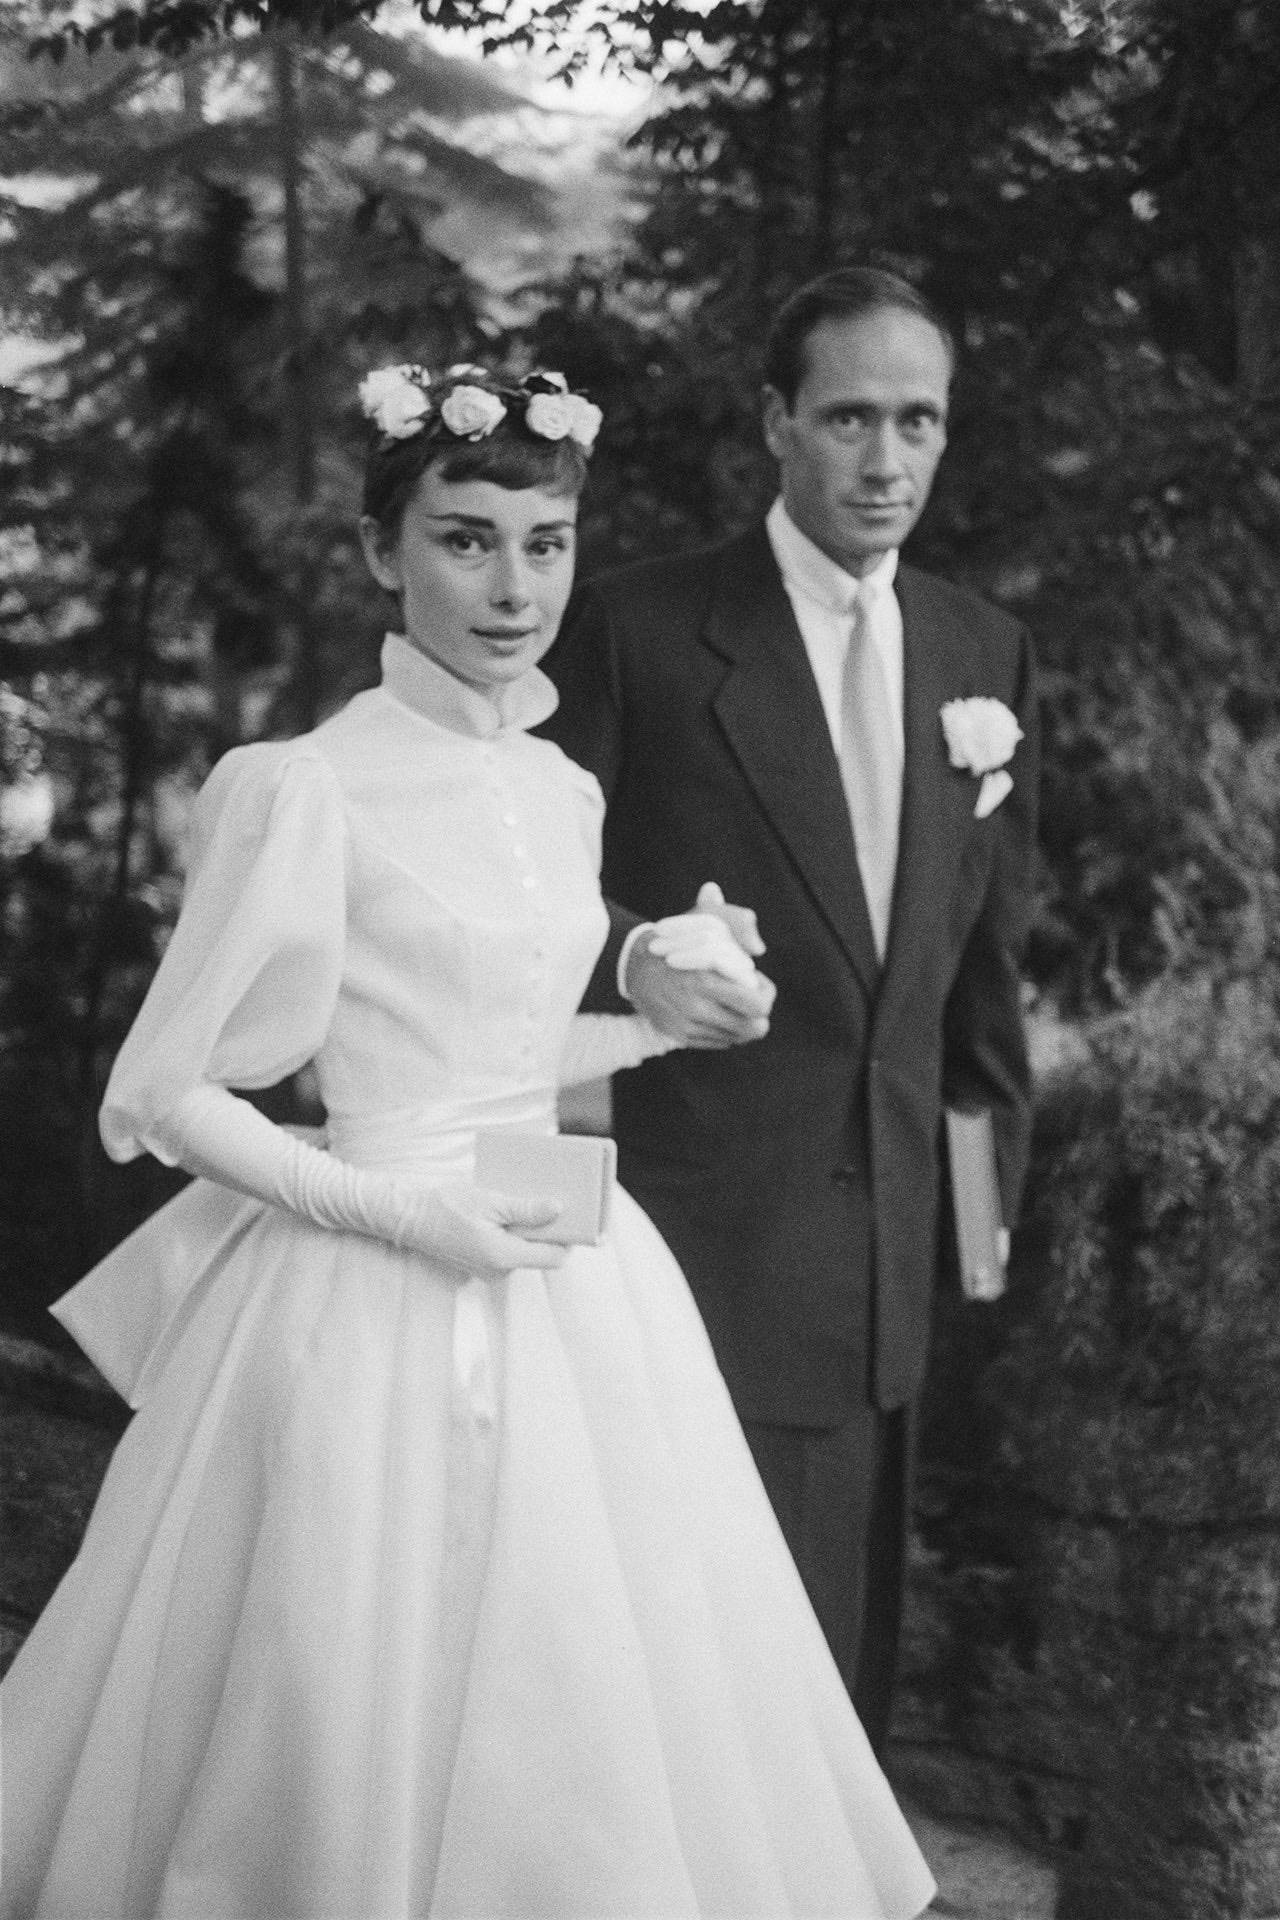 Audrey Hepburn's 1954 wedding dress